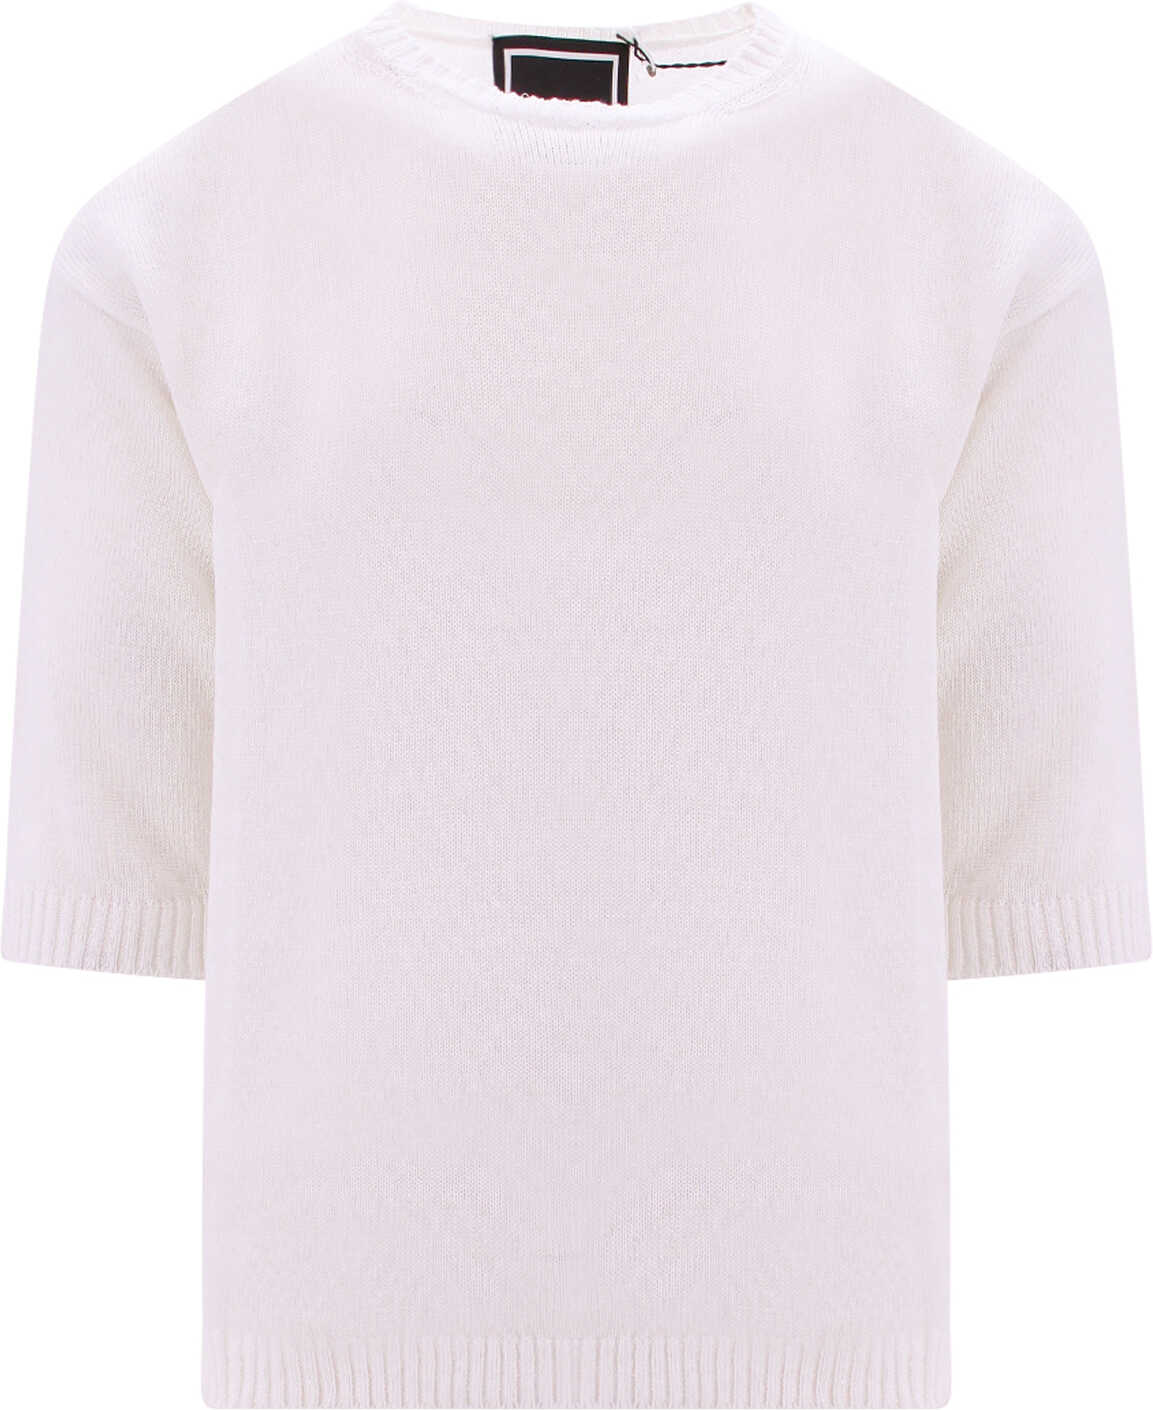 PAUL MEMOIR Sweater White